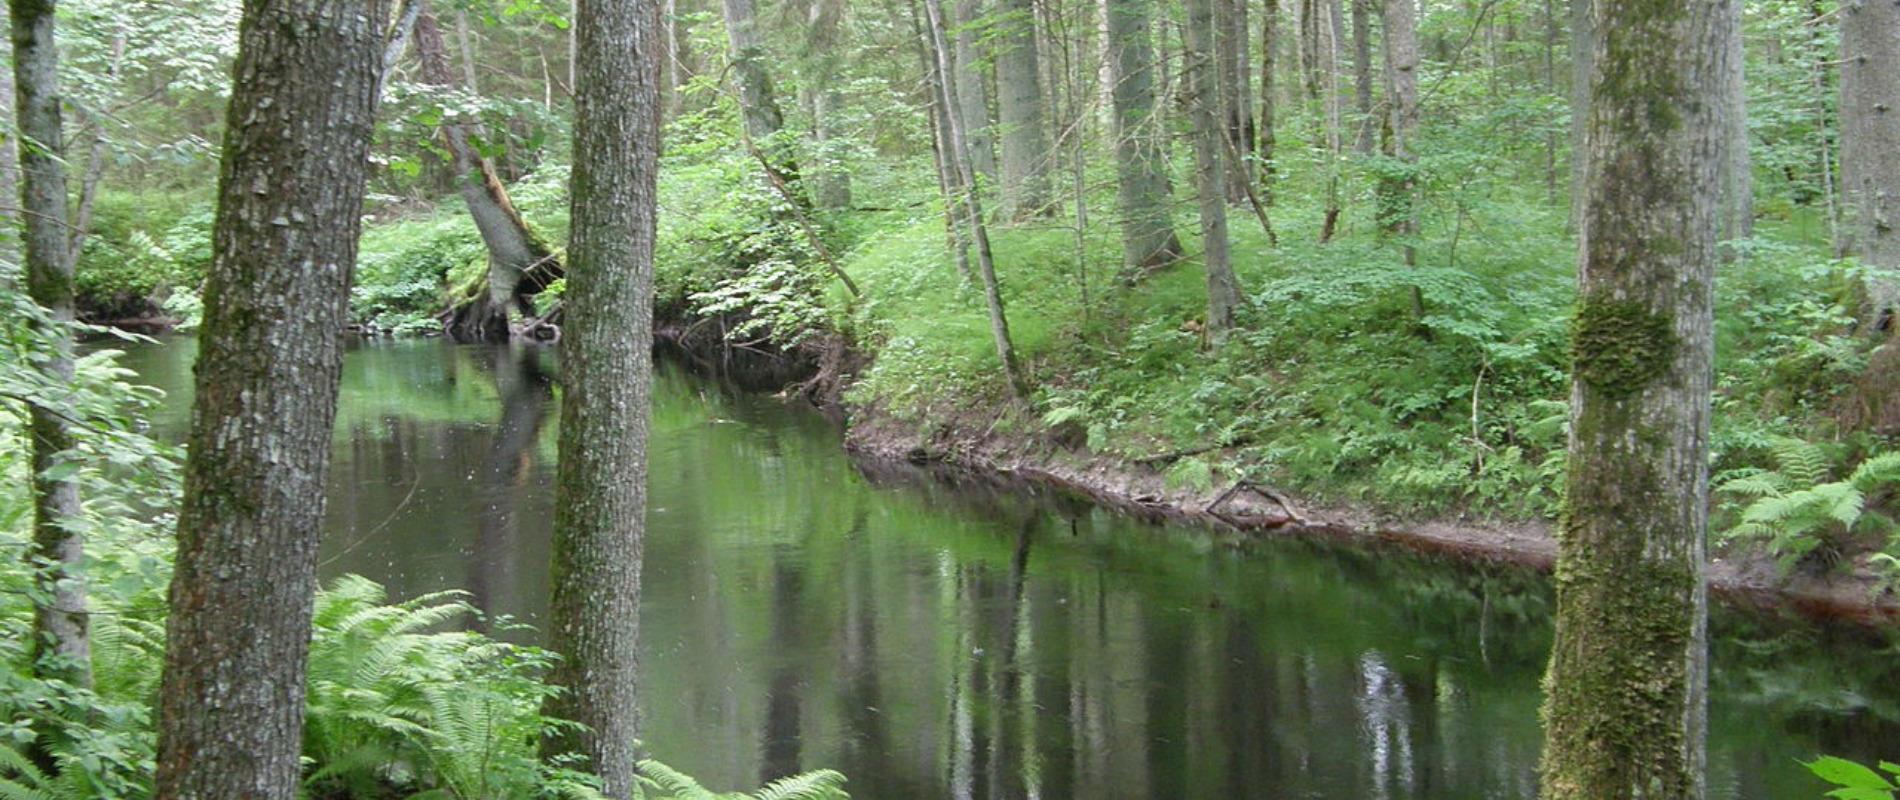 Der Poruni-Wanderweg verläuft im Urwald und am Ufer des Flusses Poruni, der in den Fluss Narva mündet. Der teils auf dem Waldweg, teils auf einem Bret